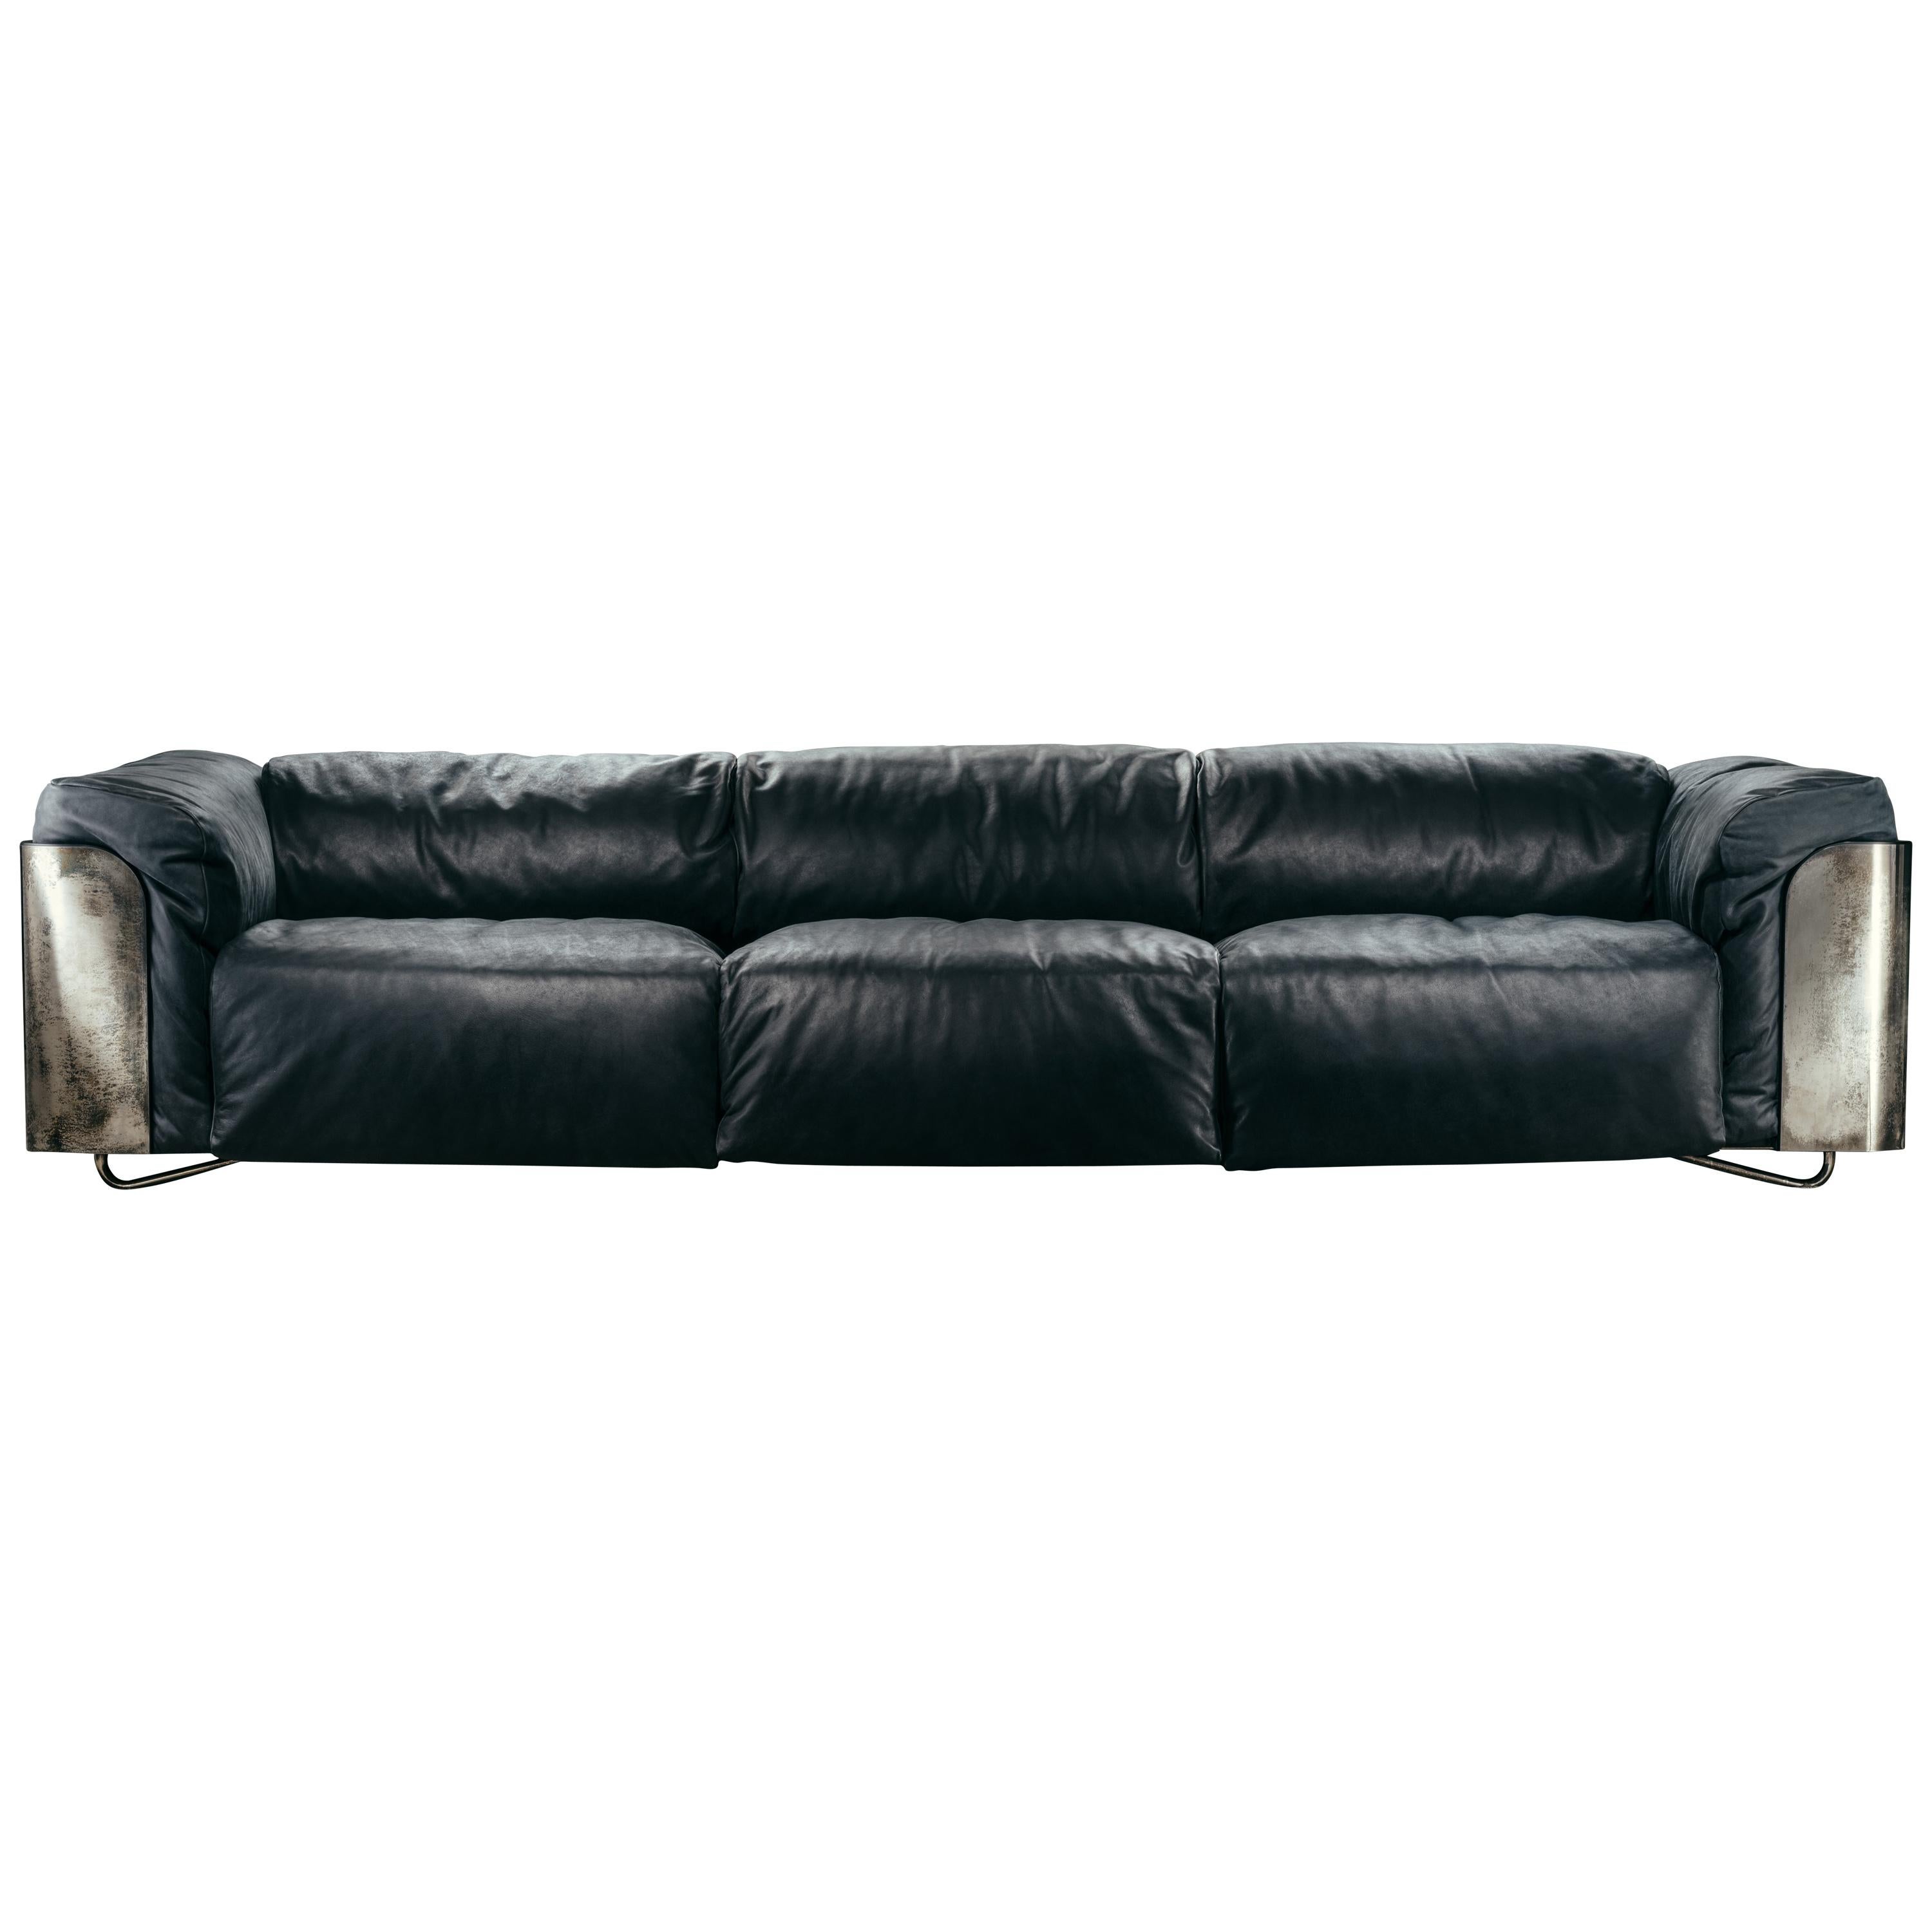 Das Sofa Saint-germain, das als 2- oder 3-Sitzer erhältlich ist, besteht aus einer mattschwarzen Holzplatte, die im äußeren Bereich mit einer Metallbeschichtung versehen ist, mit einem gepolsterten Rand in der gleichen Polsterung wie die Sitzfläche,